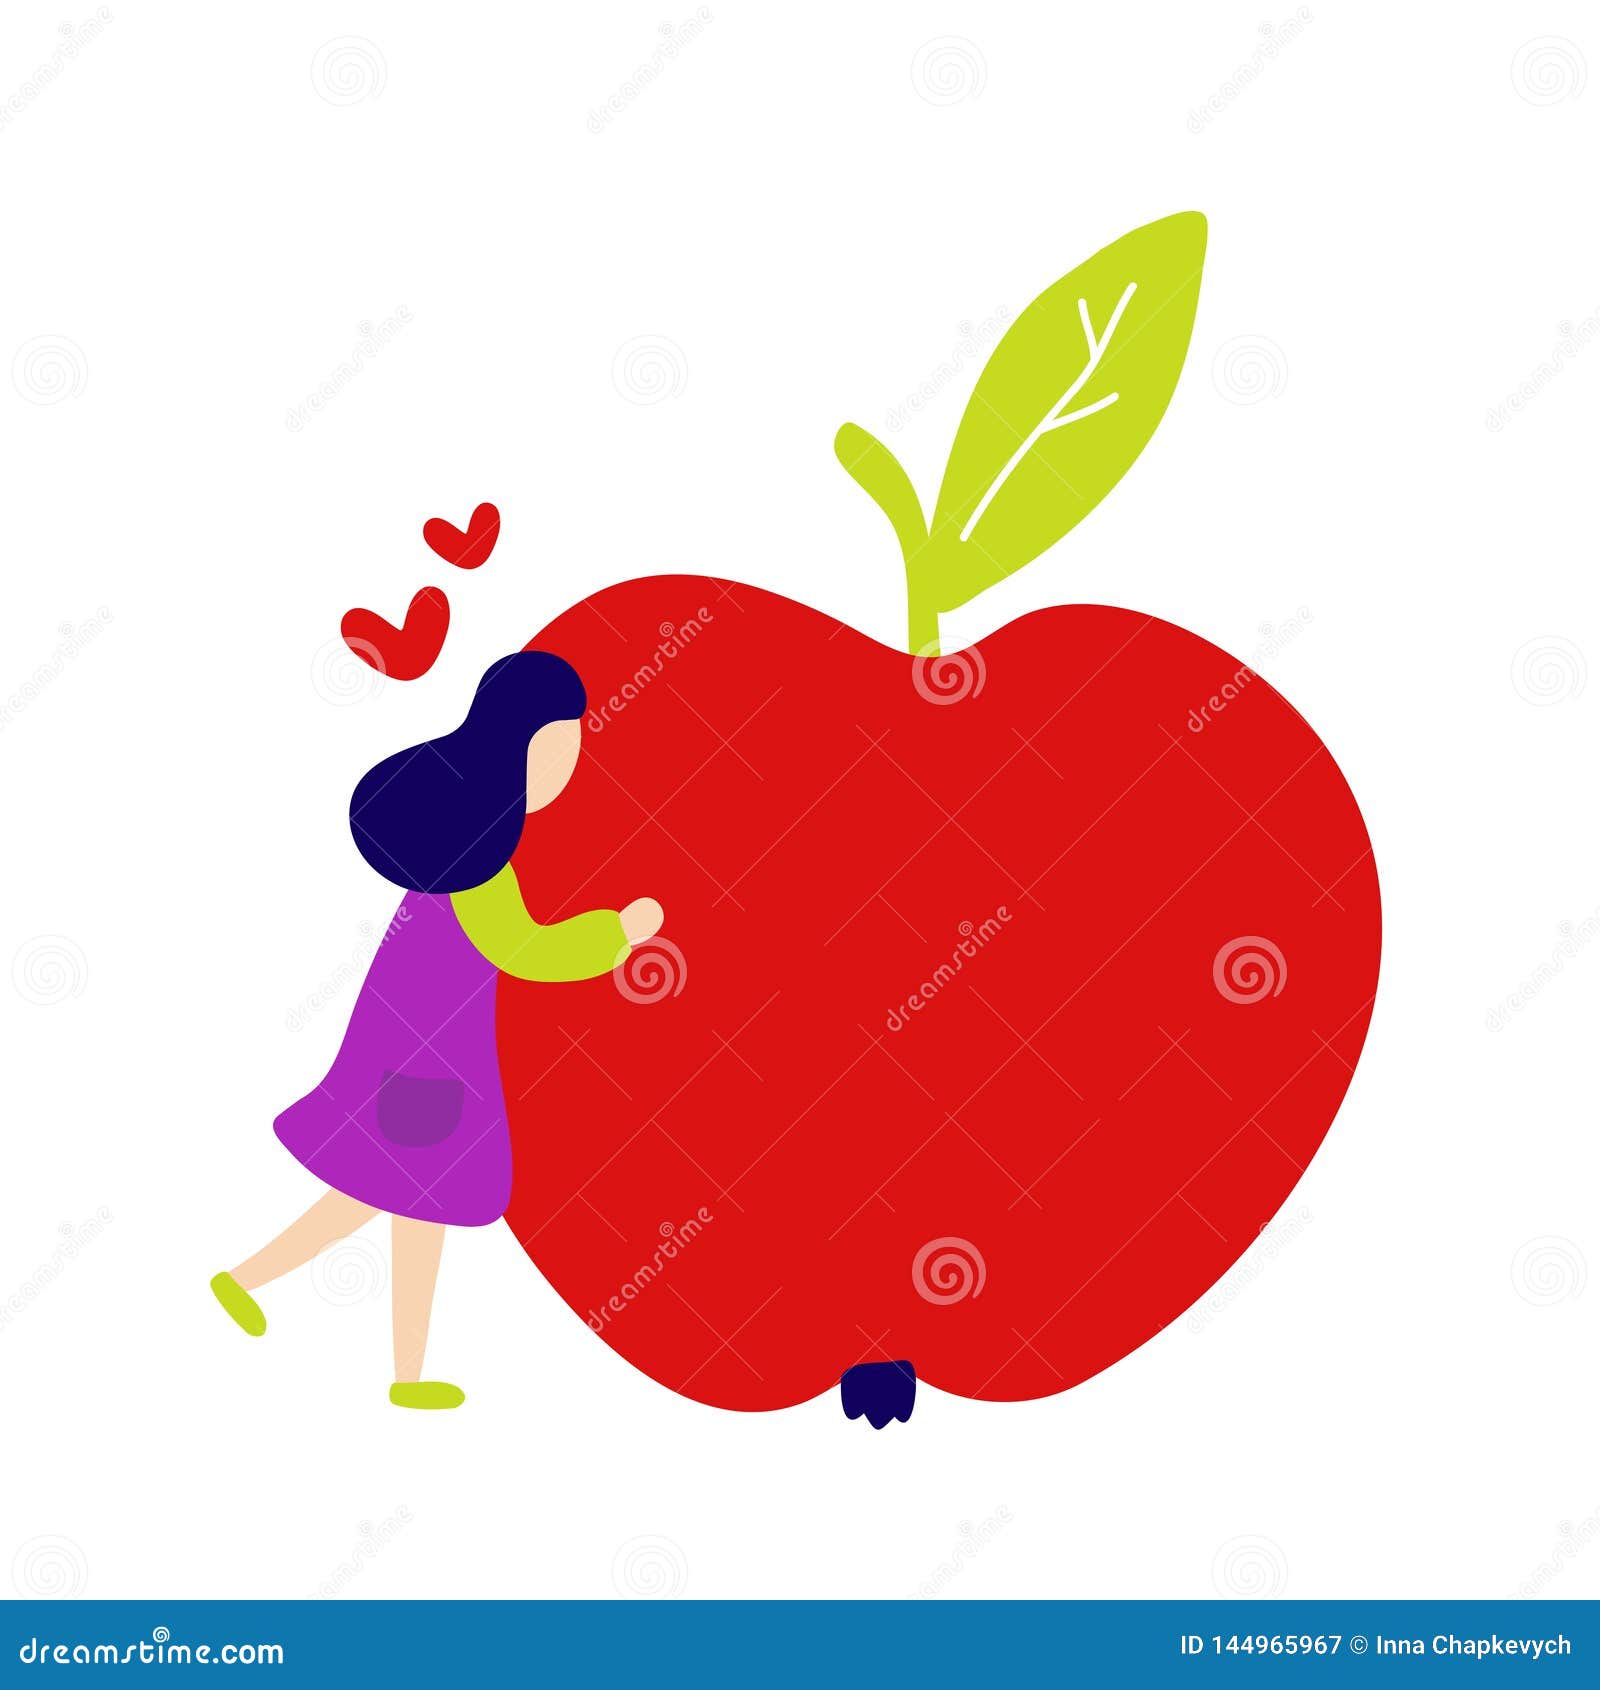 Ragazza che abbraccia grande mela rossa Progettazione piana dell'icona dell'illustrazione di stile di vettore Isolato su priorit? bassa bianca